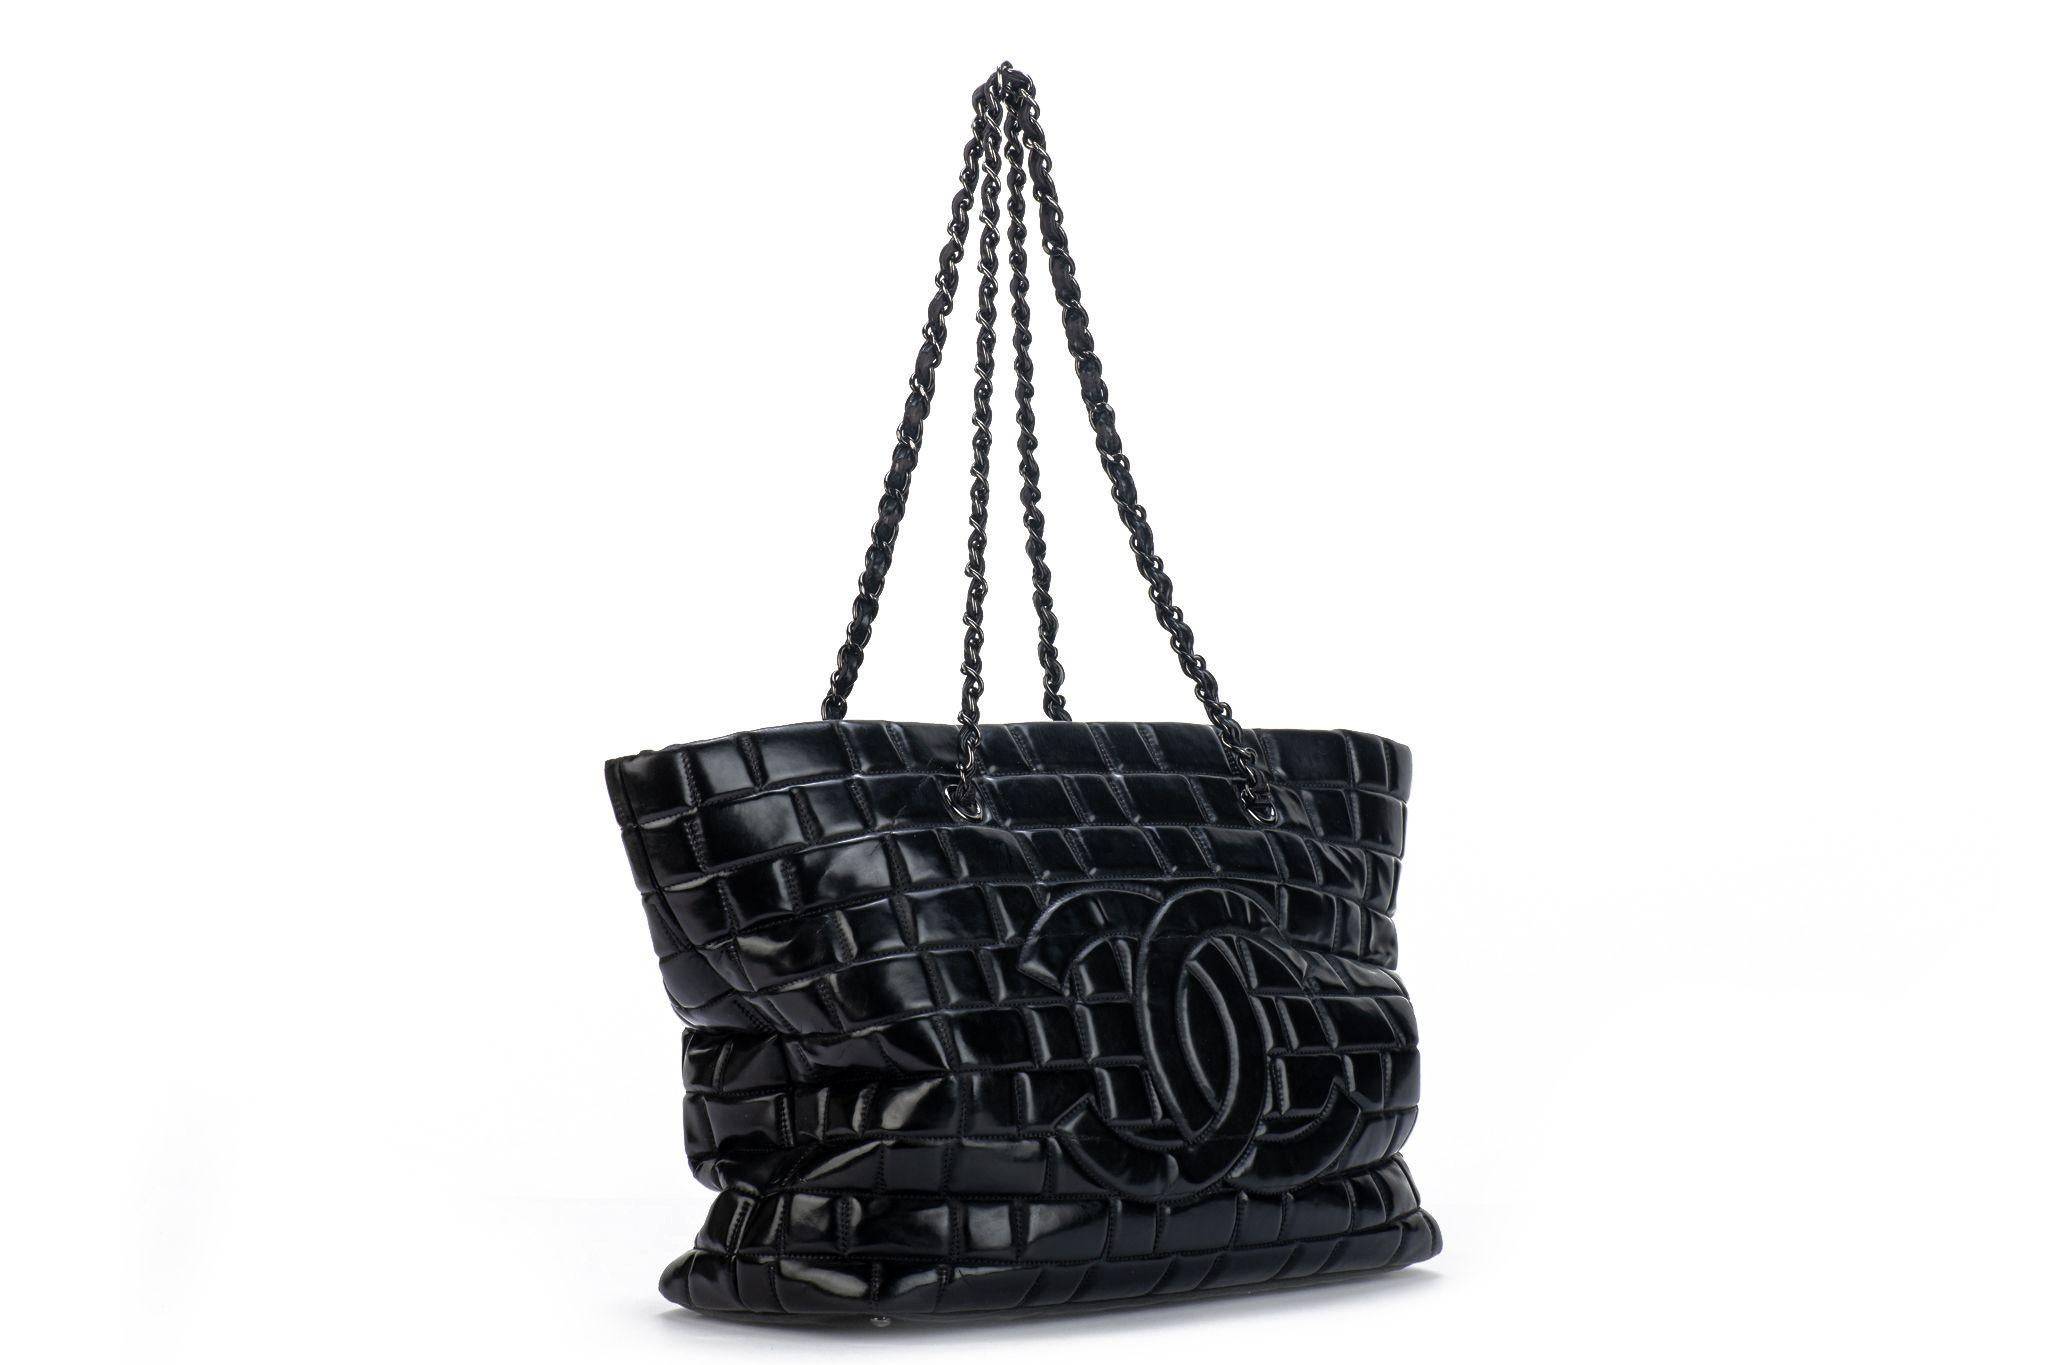 Chanel, tuiles brossées noir, grand sac à main en cuir, longueur de l'anse 11.5